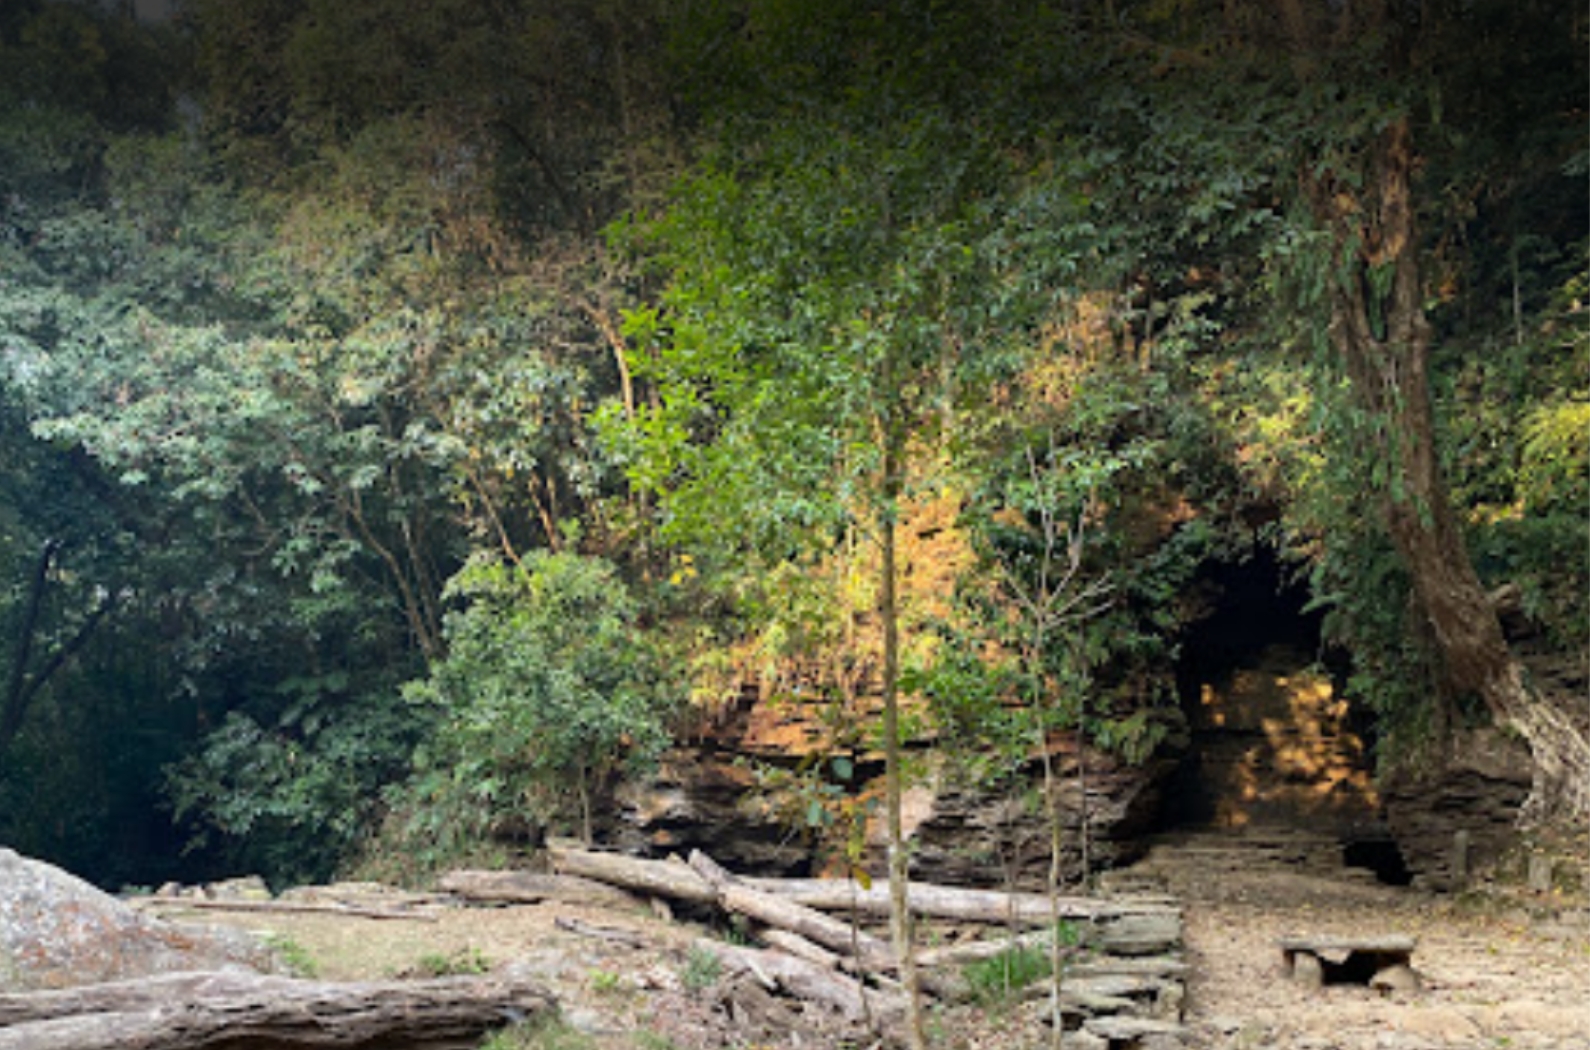 Tonglong caves